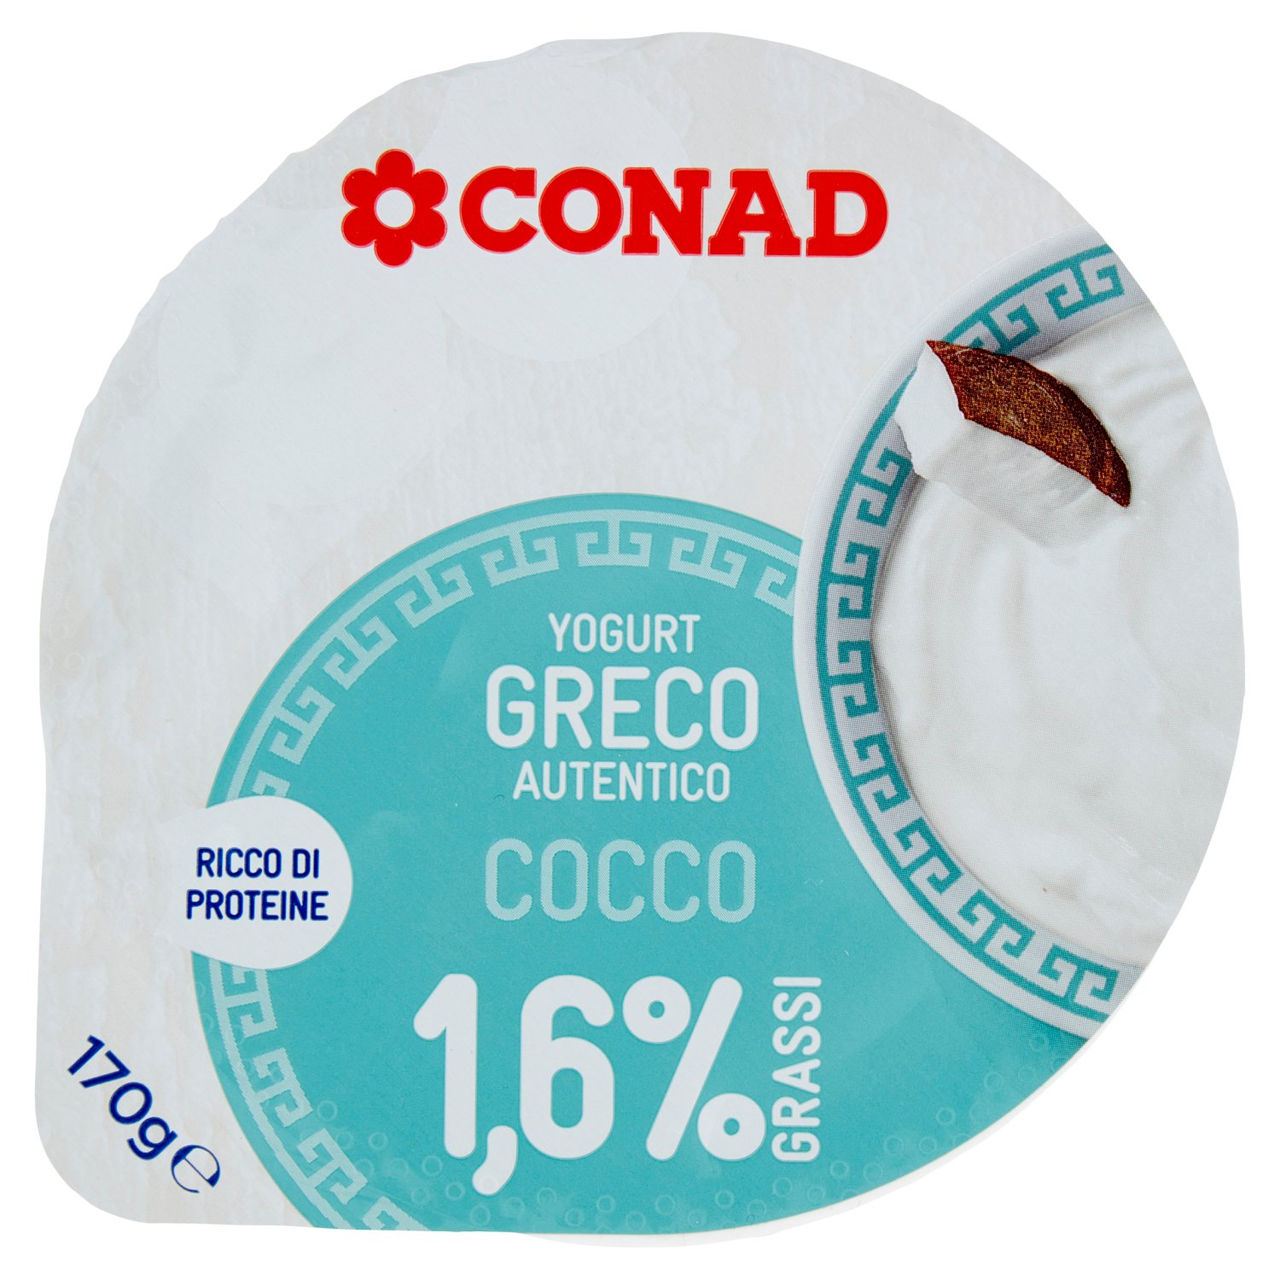 Yogurt Greco Autentico Cocco Conad online